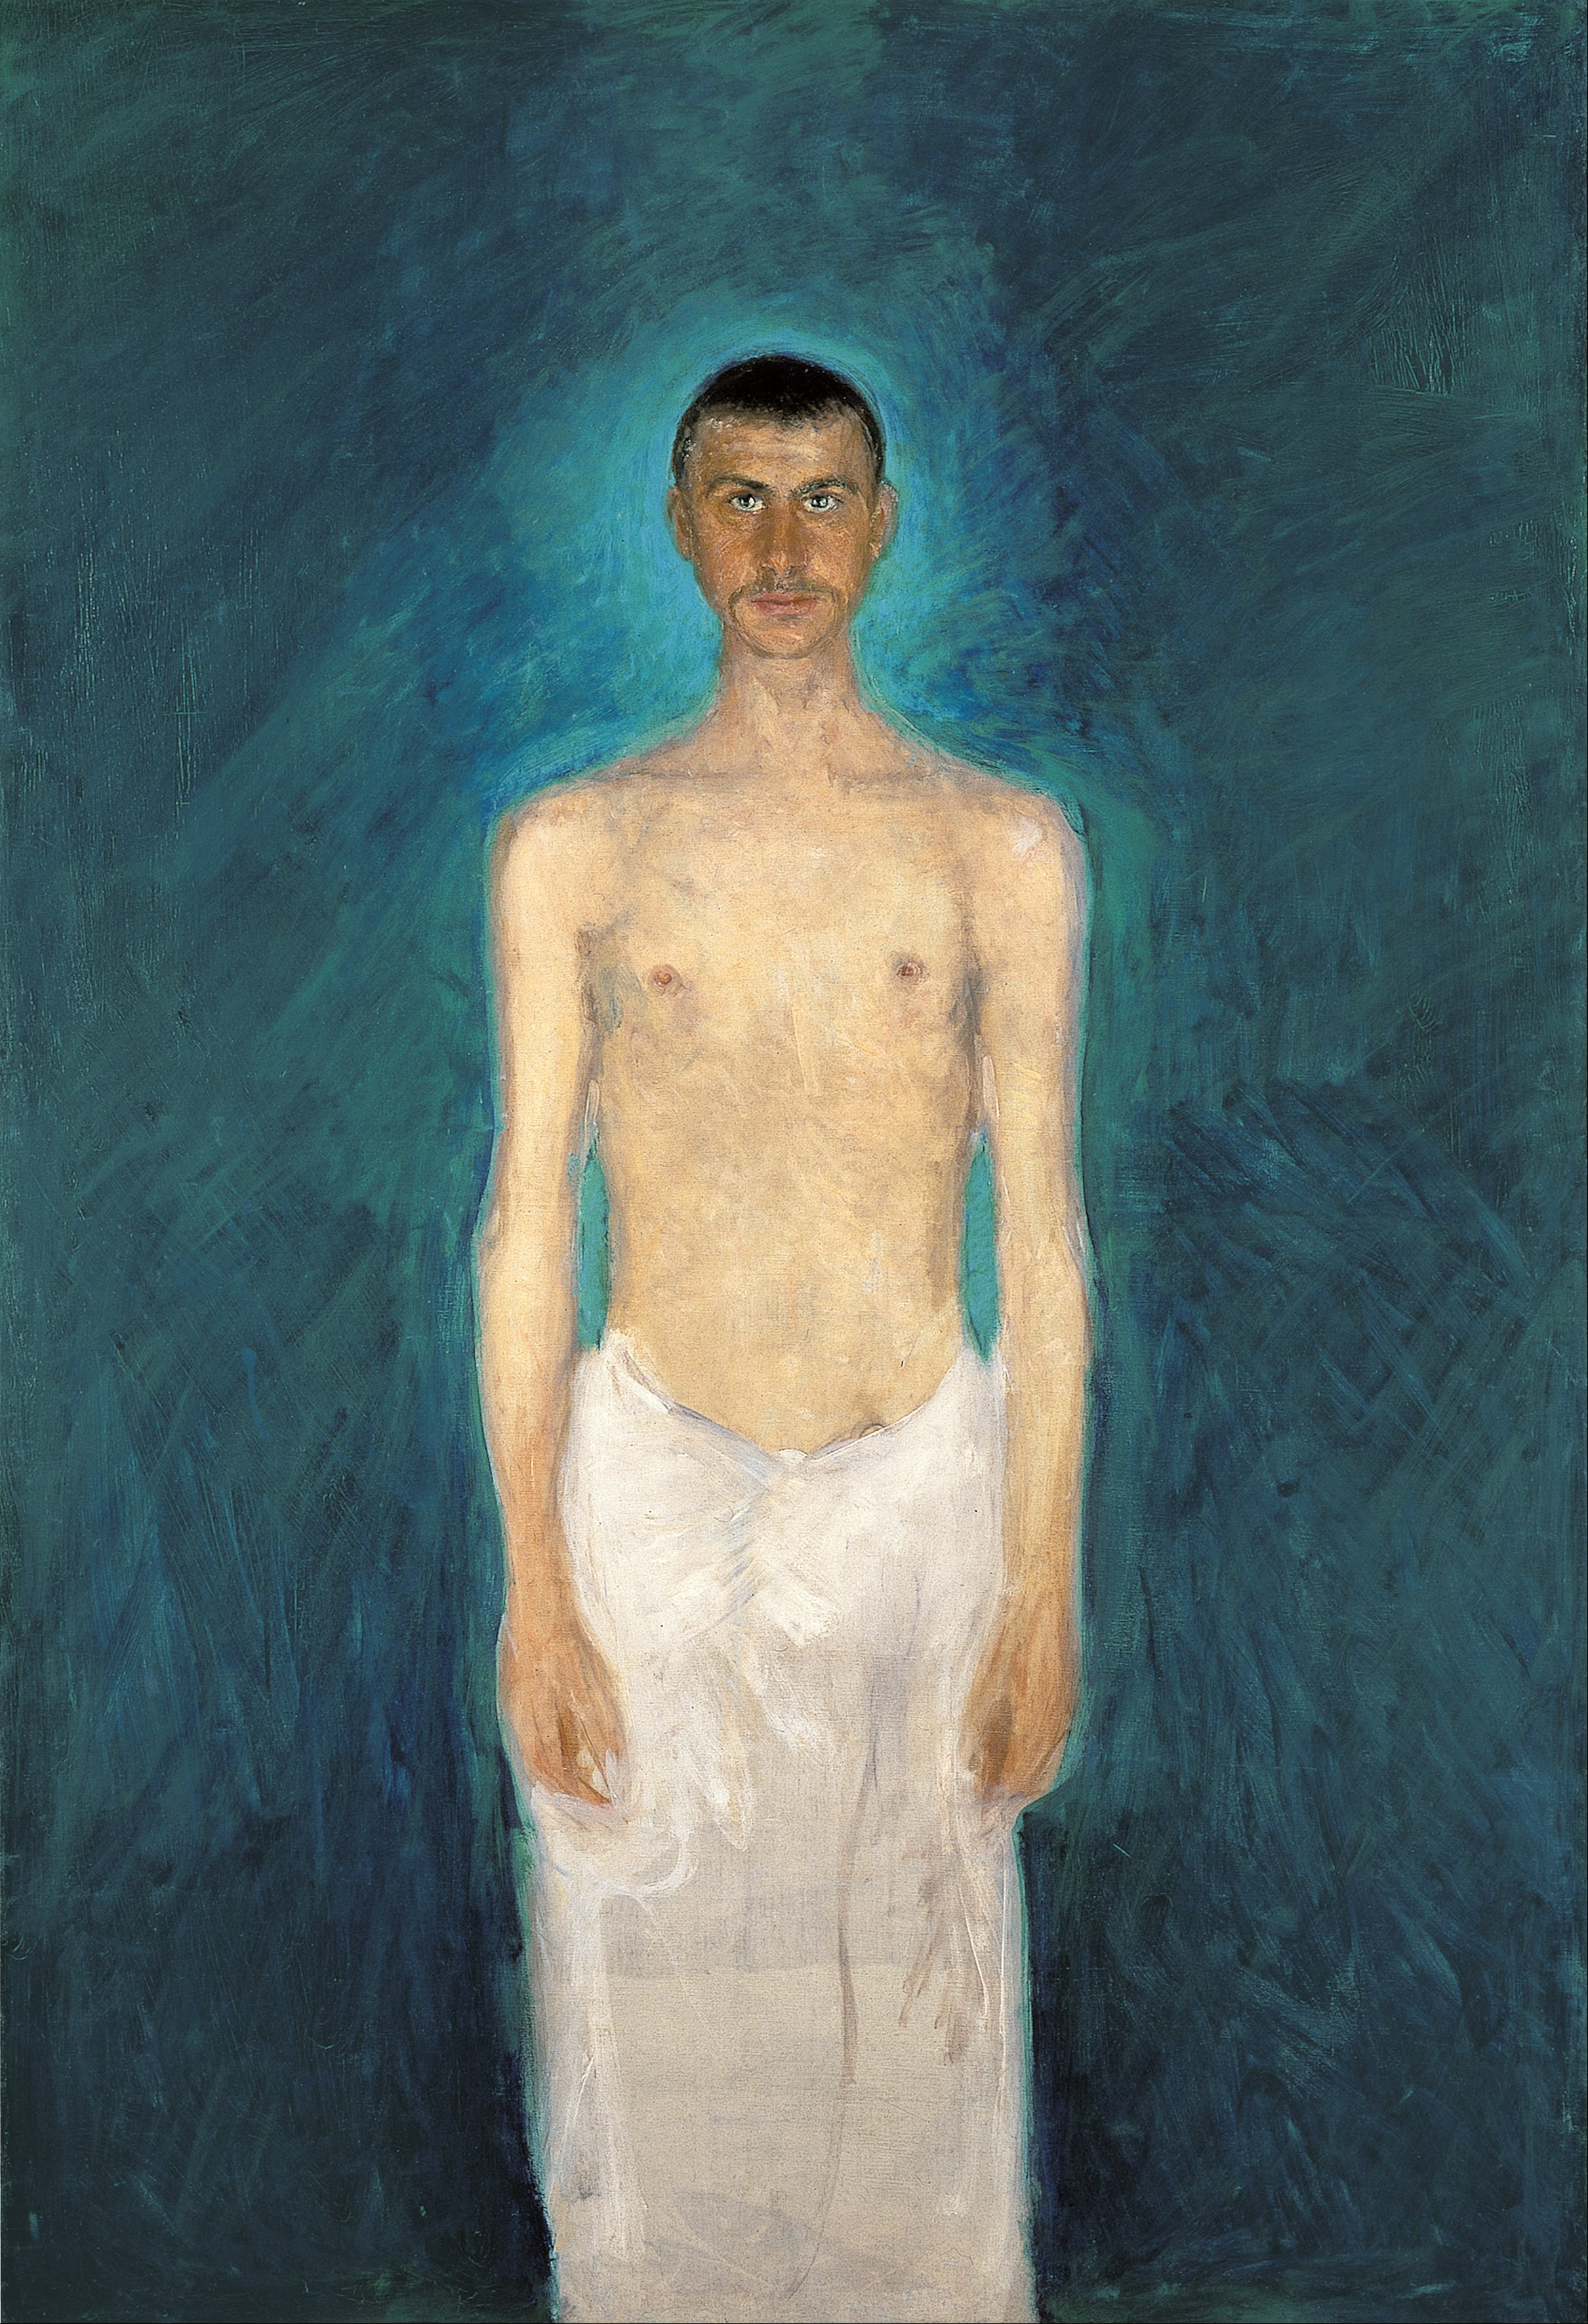 Semi-Nude Self-Portrait by Richard Gerstl - 1902/04 Leopold Museum